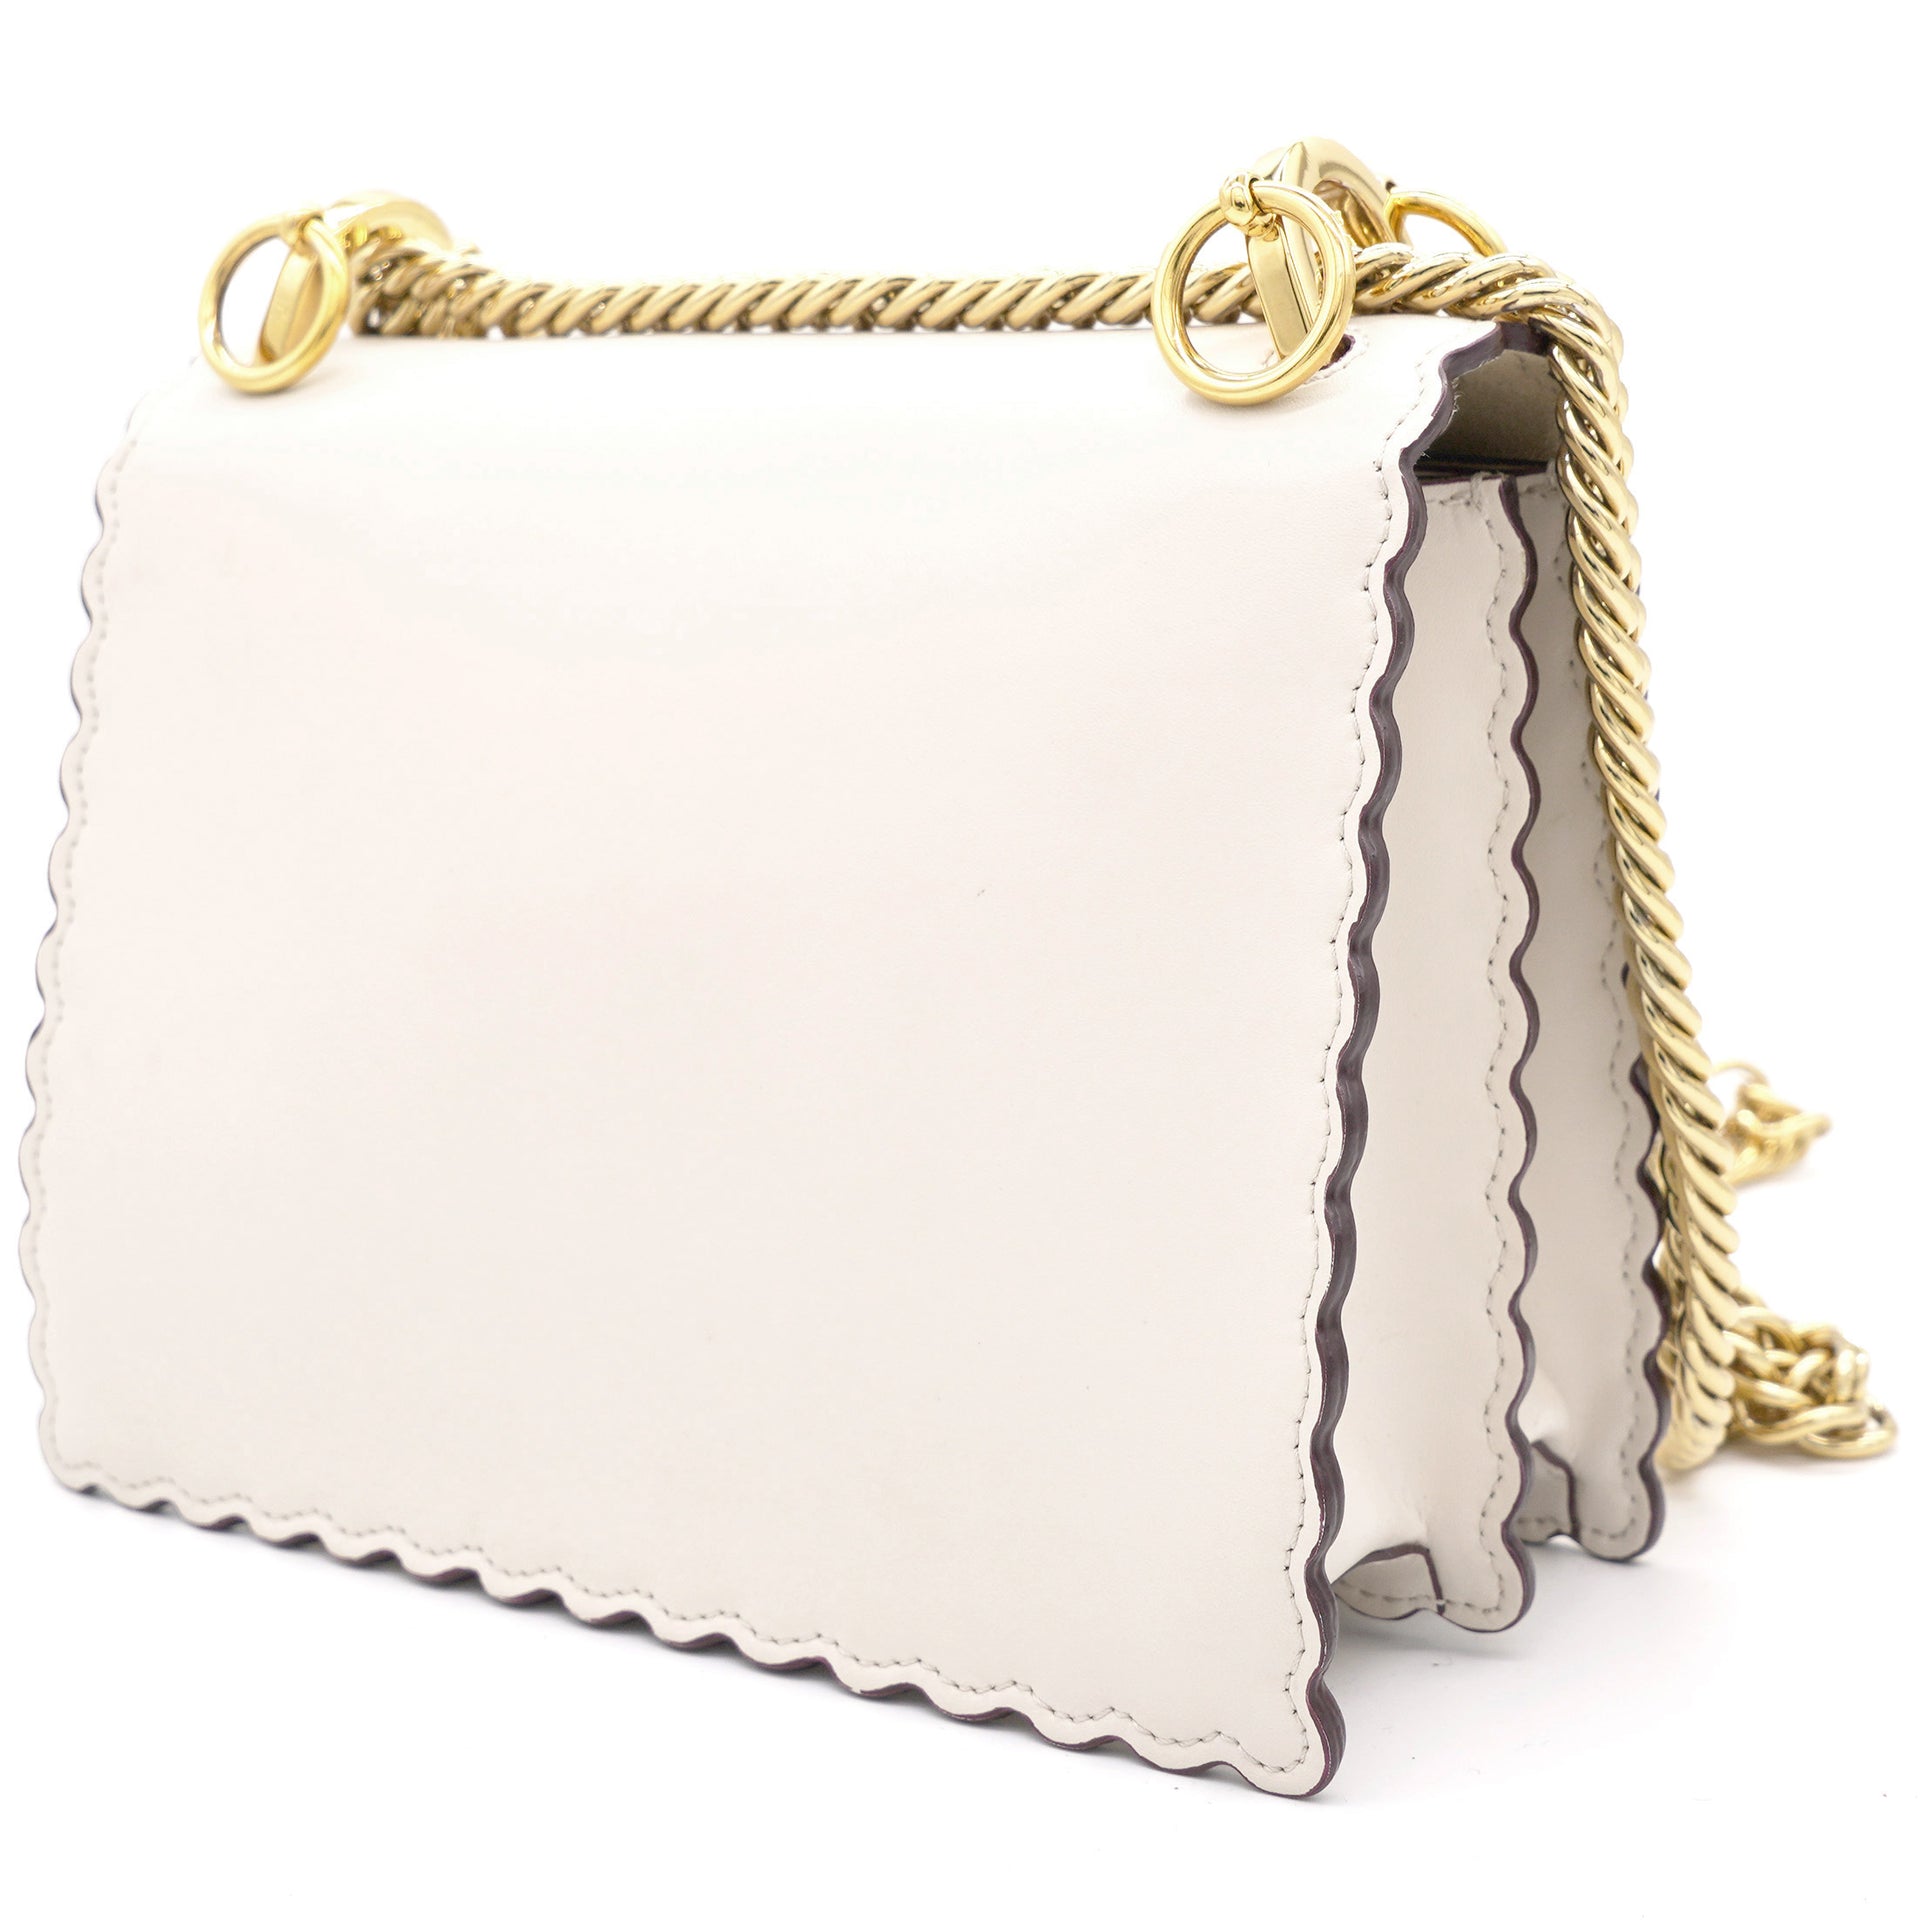 Fendi Ivory Leather Small Scalloped Kan I Shoulder Bag – STYLISHTOP